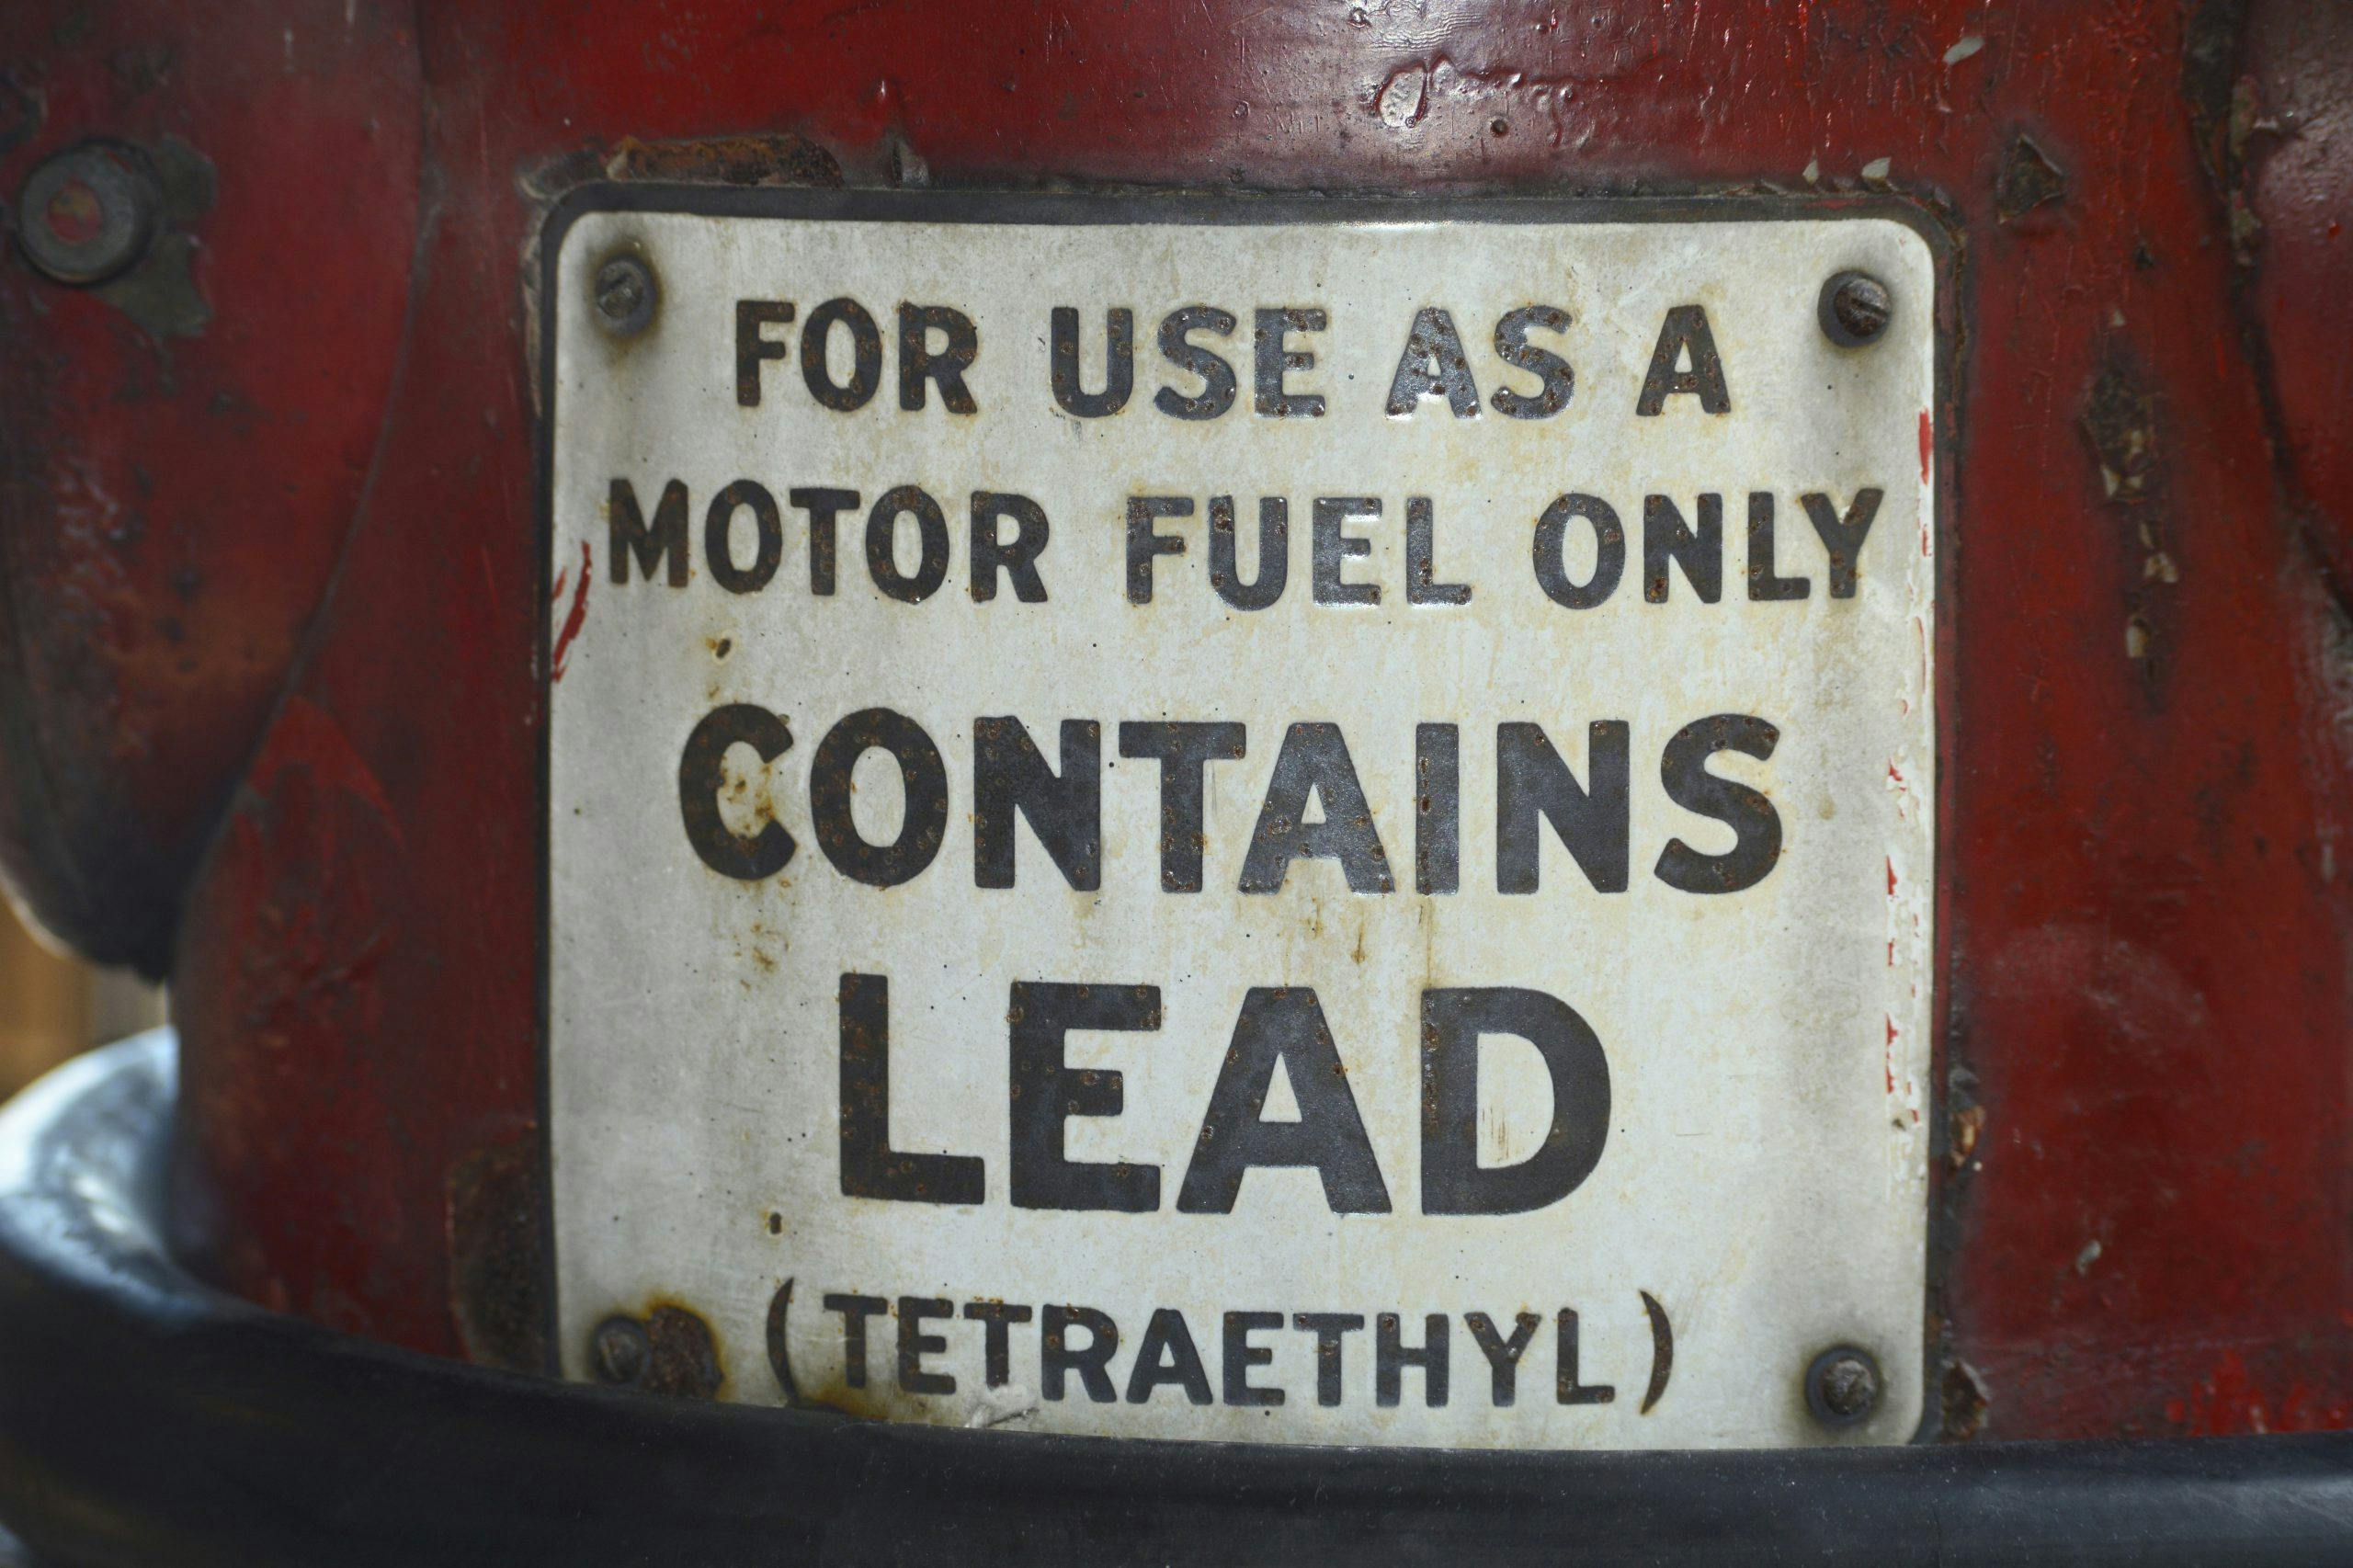 Vintage gasoline pump advises gas contains lead